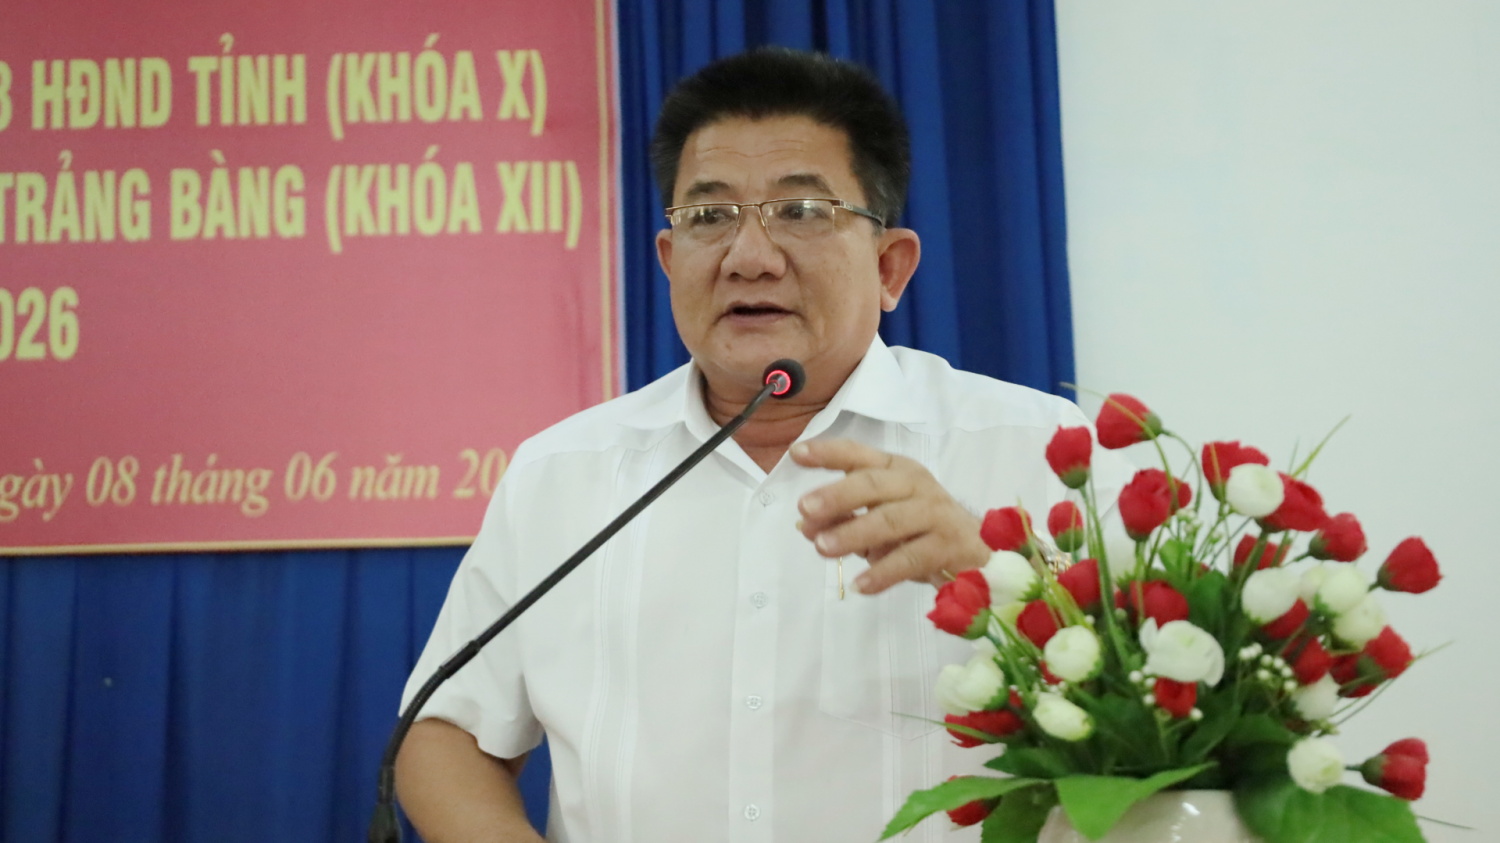 Ông Võ Văn Dũng – Đại biểu HĐND tỉnh, Bí thư Thị uỷ Trảng Bàng tiếp thu ý kiến của cử tri